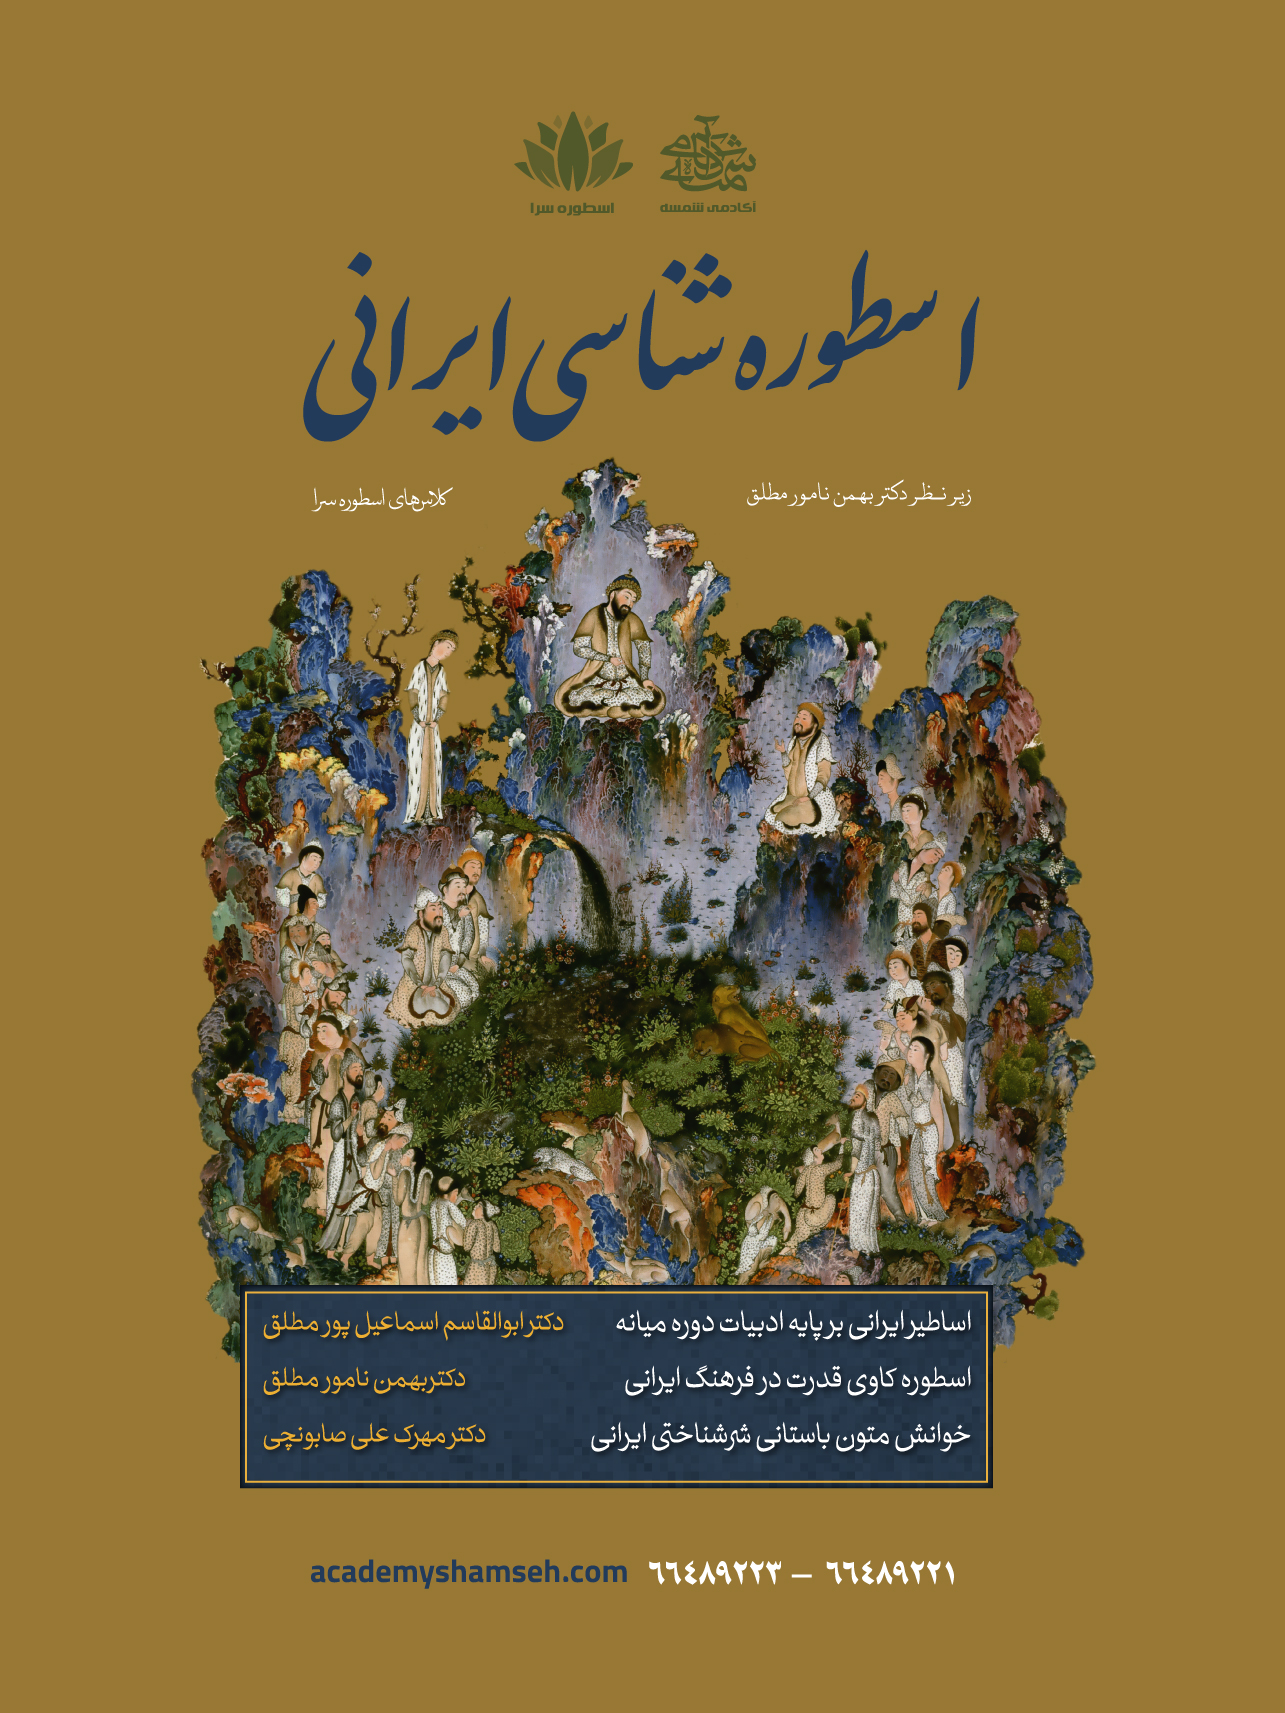 اسطوره شناسی ایرانی - آکادمی شمسه